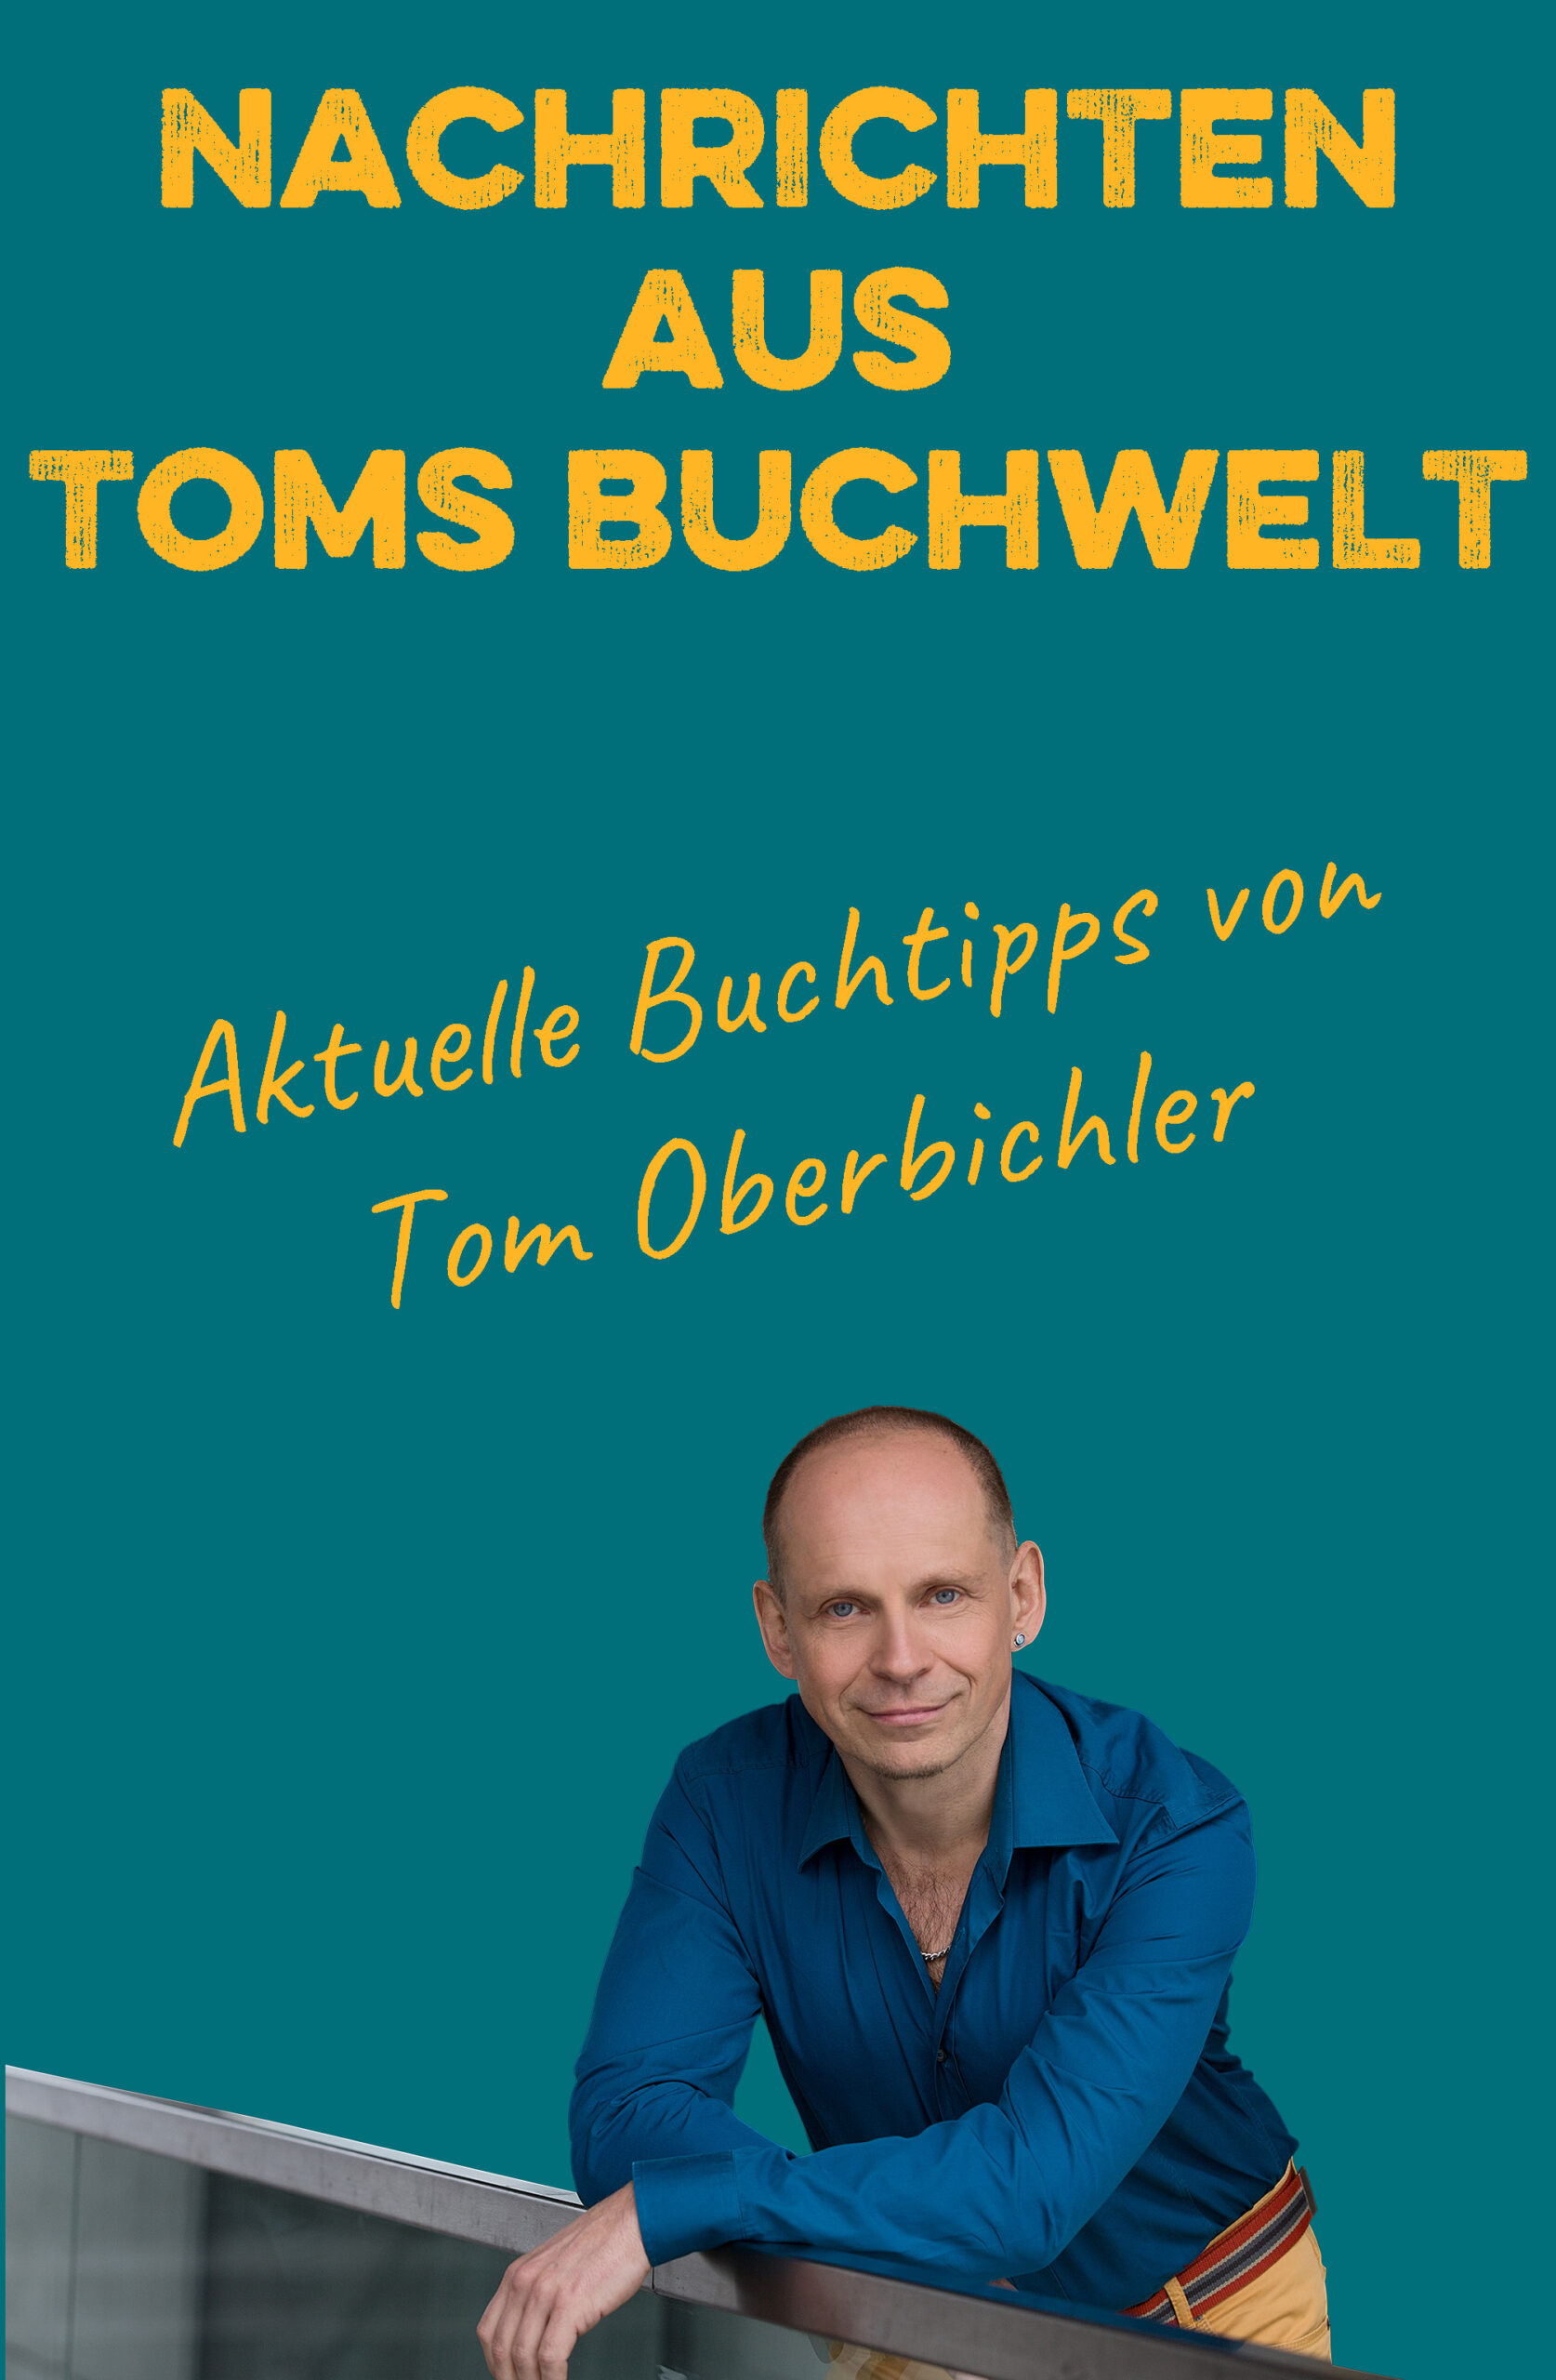 Nachrichten aus Toms Buchwelt aktuelle Buchtipps von Tom Oberbichler - mit Foto von Tom